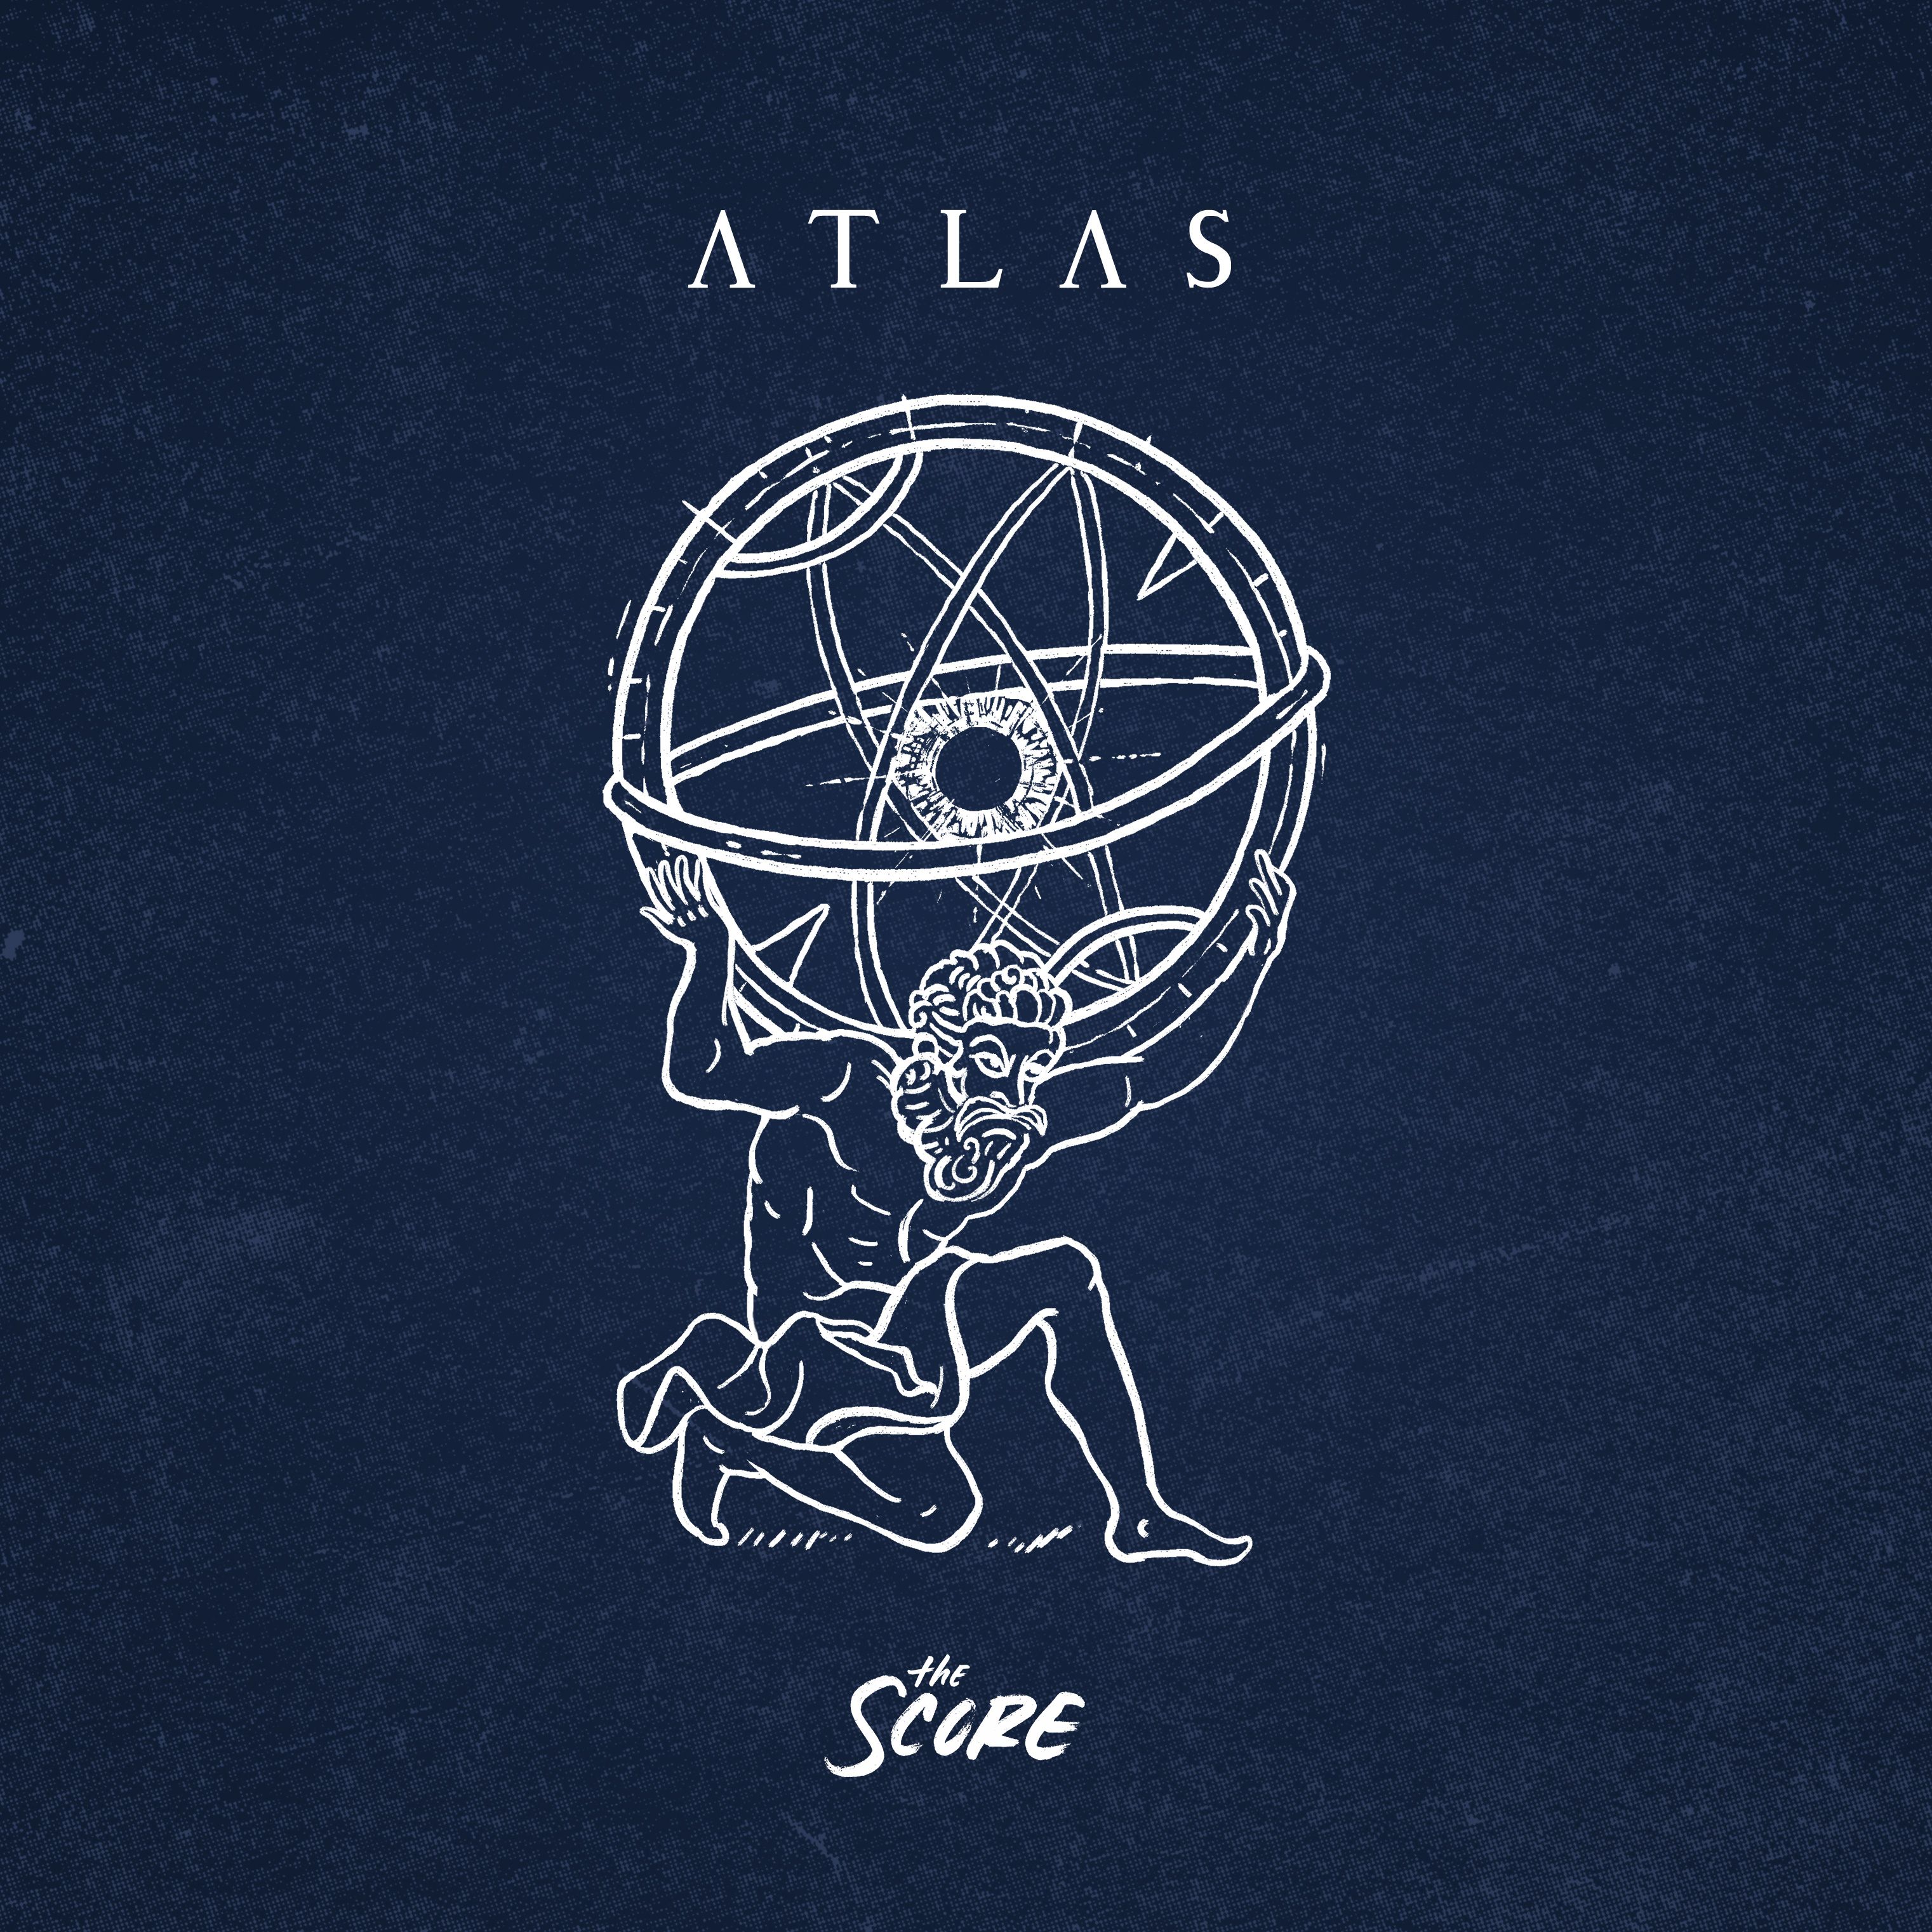 The Score 'ATLAS'. Republic Album Art. Music albums, Band